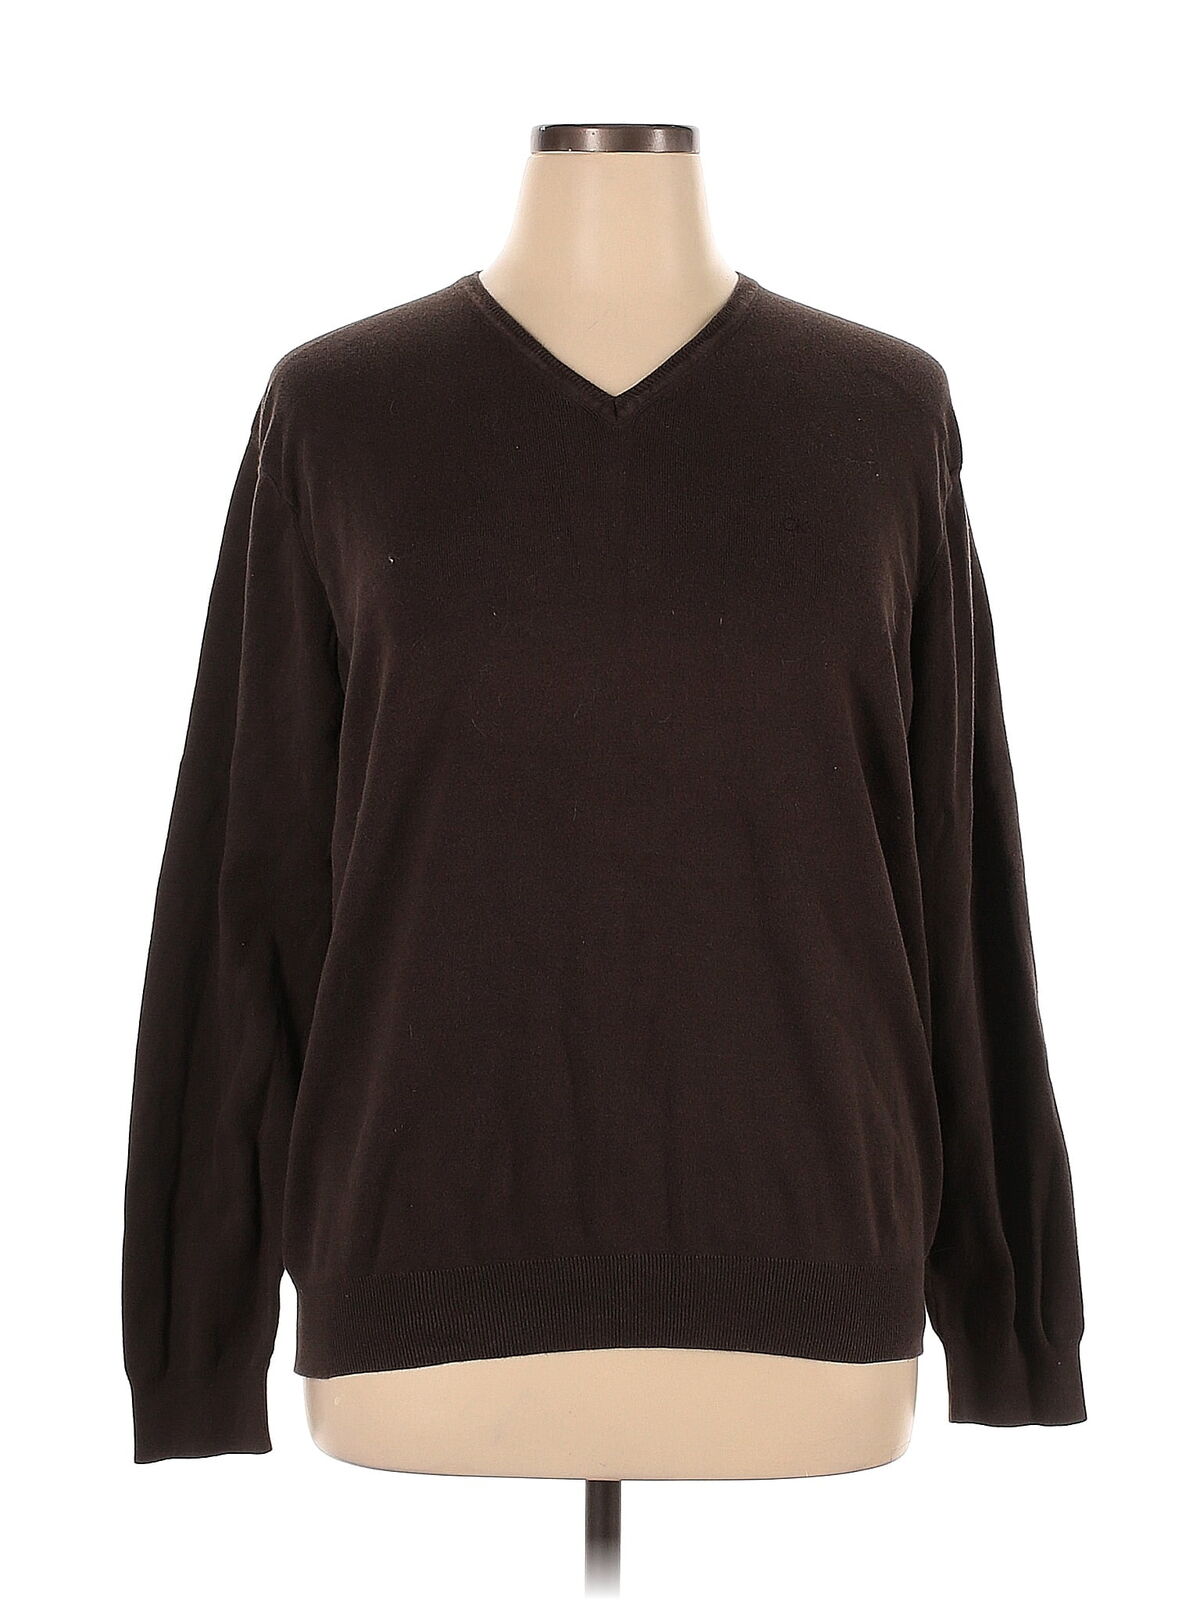 Calvin Klein Women Brown Pullover Sweater XL - image 1